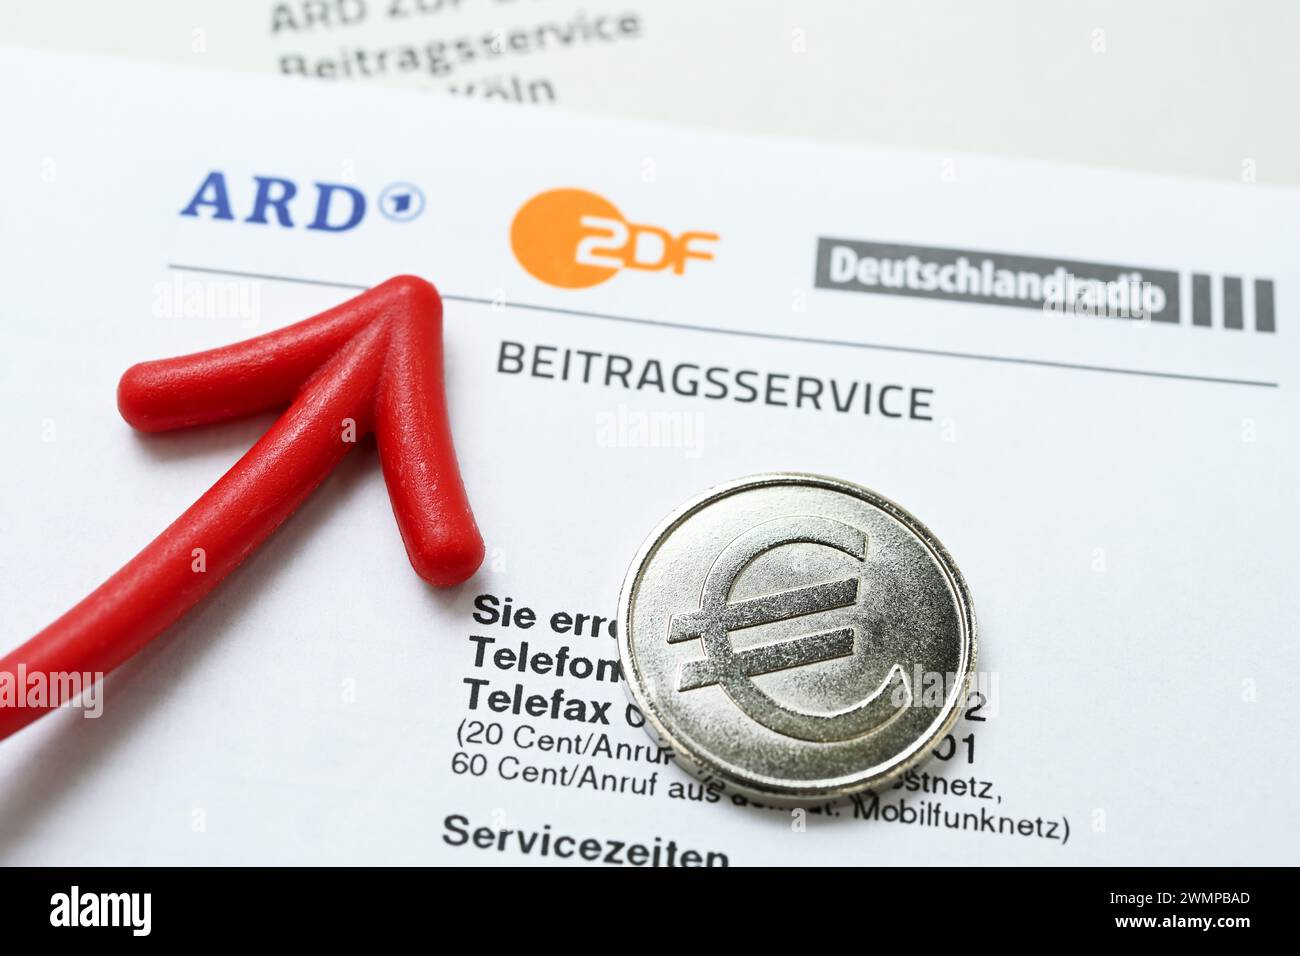 Lettera di ARD ZDF Deutschlandradio Beitragsservice con Freccia Rossa e moneta con simbolo dell'euro, foto simbolica dell'aumento della tassa di radiodiffusione Foto Stock